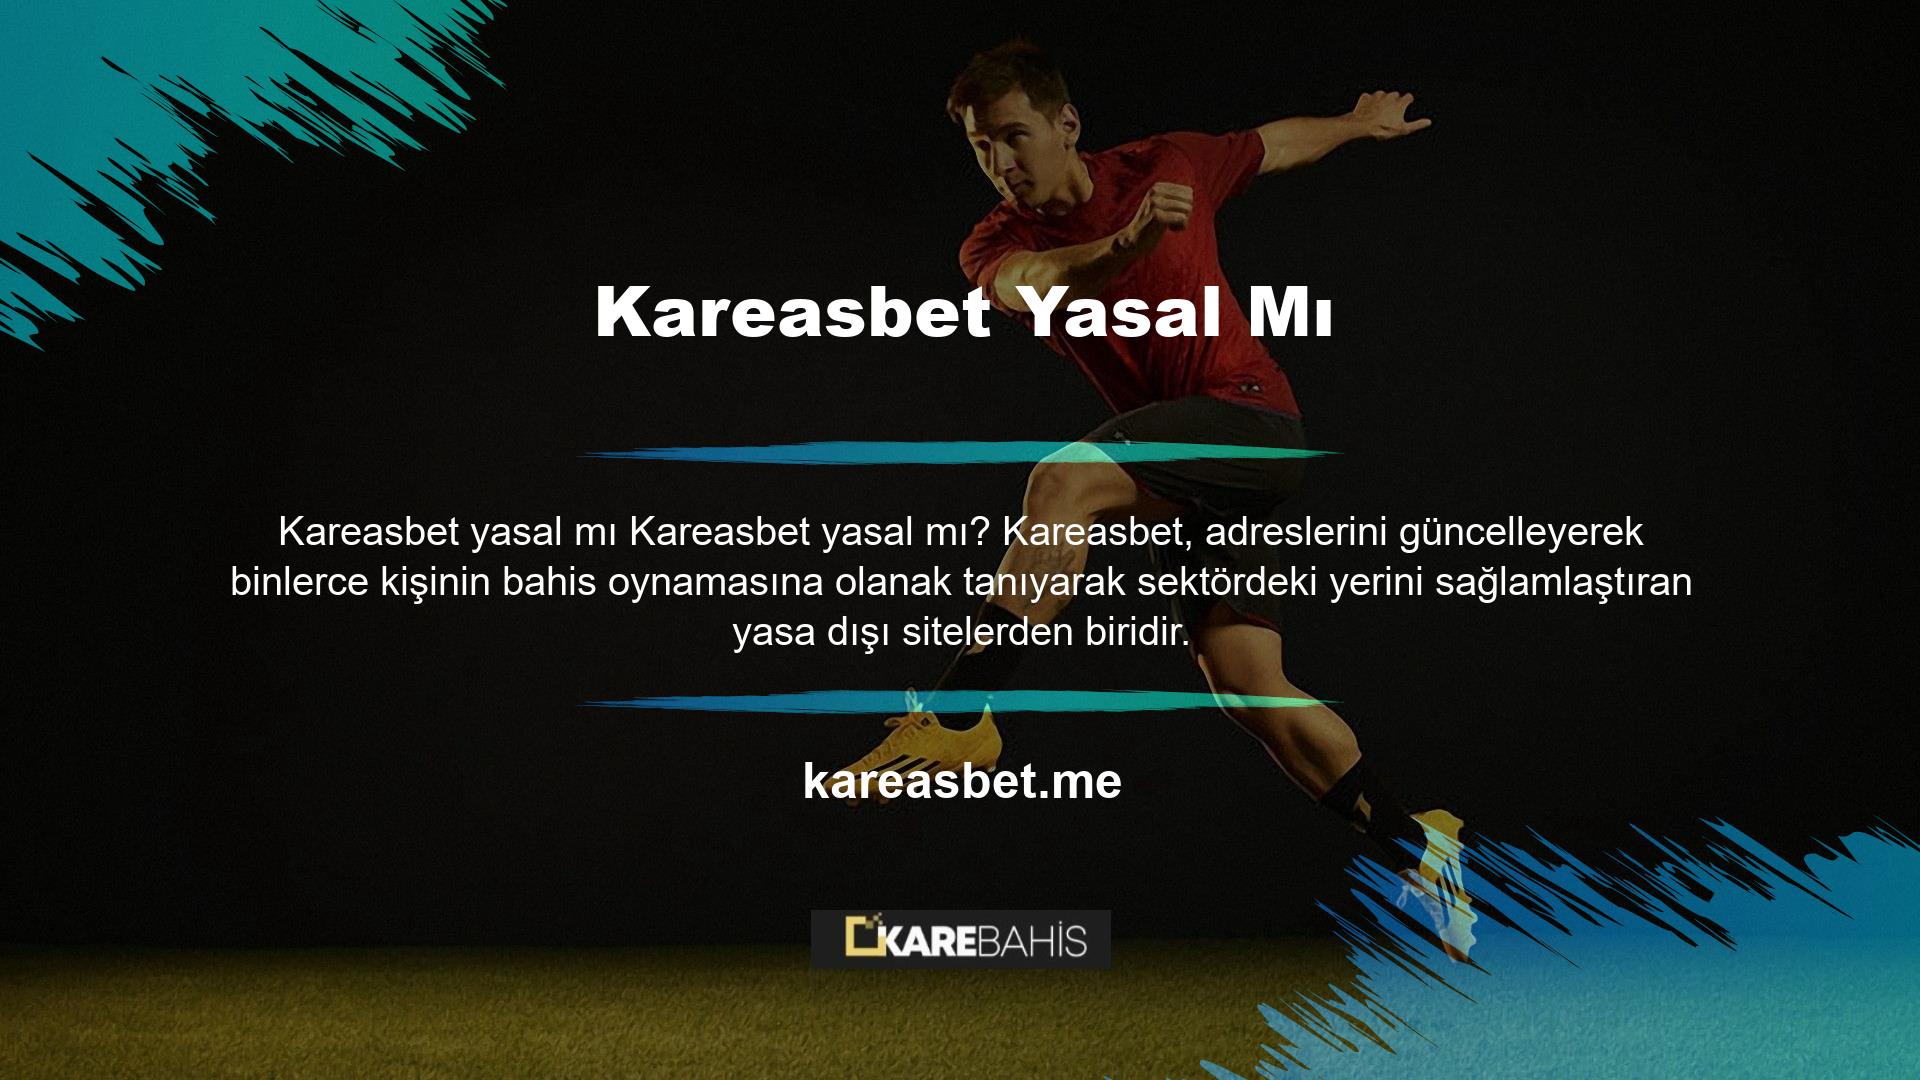 Kareasbet giriş adresini kullanarak Türkçe paylaşımda bulunmak, web sitesinin meşru olduğu anlamına gelmez